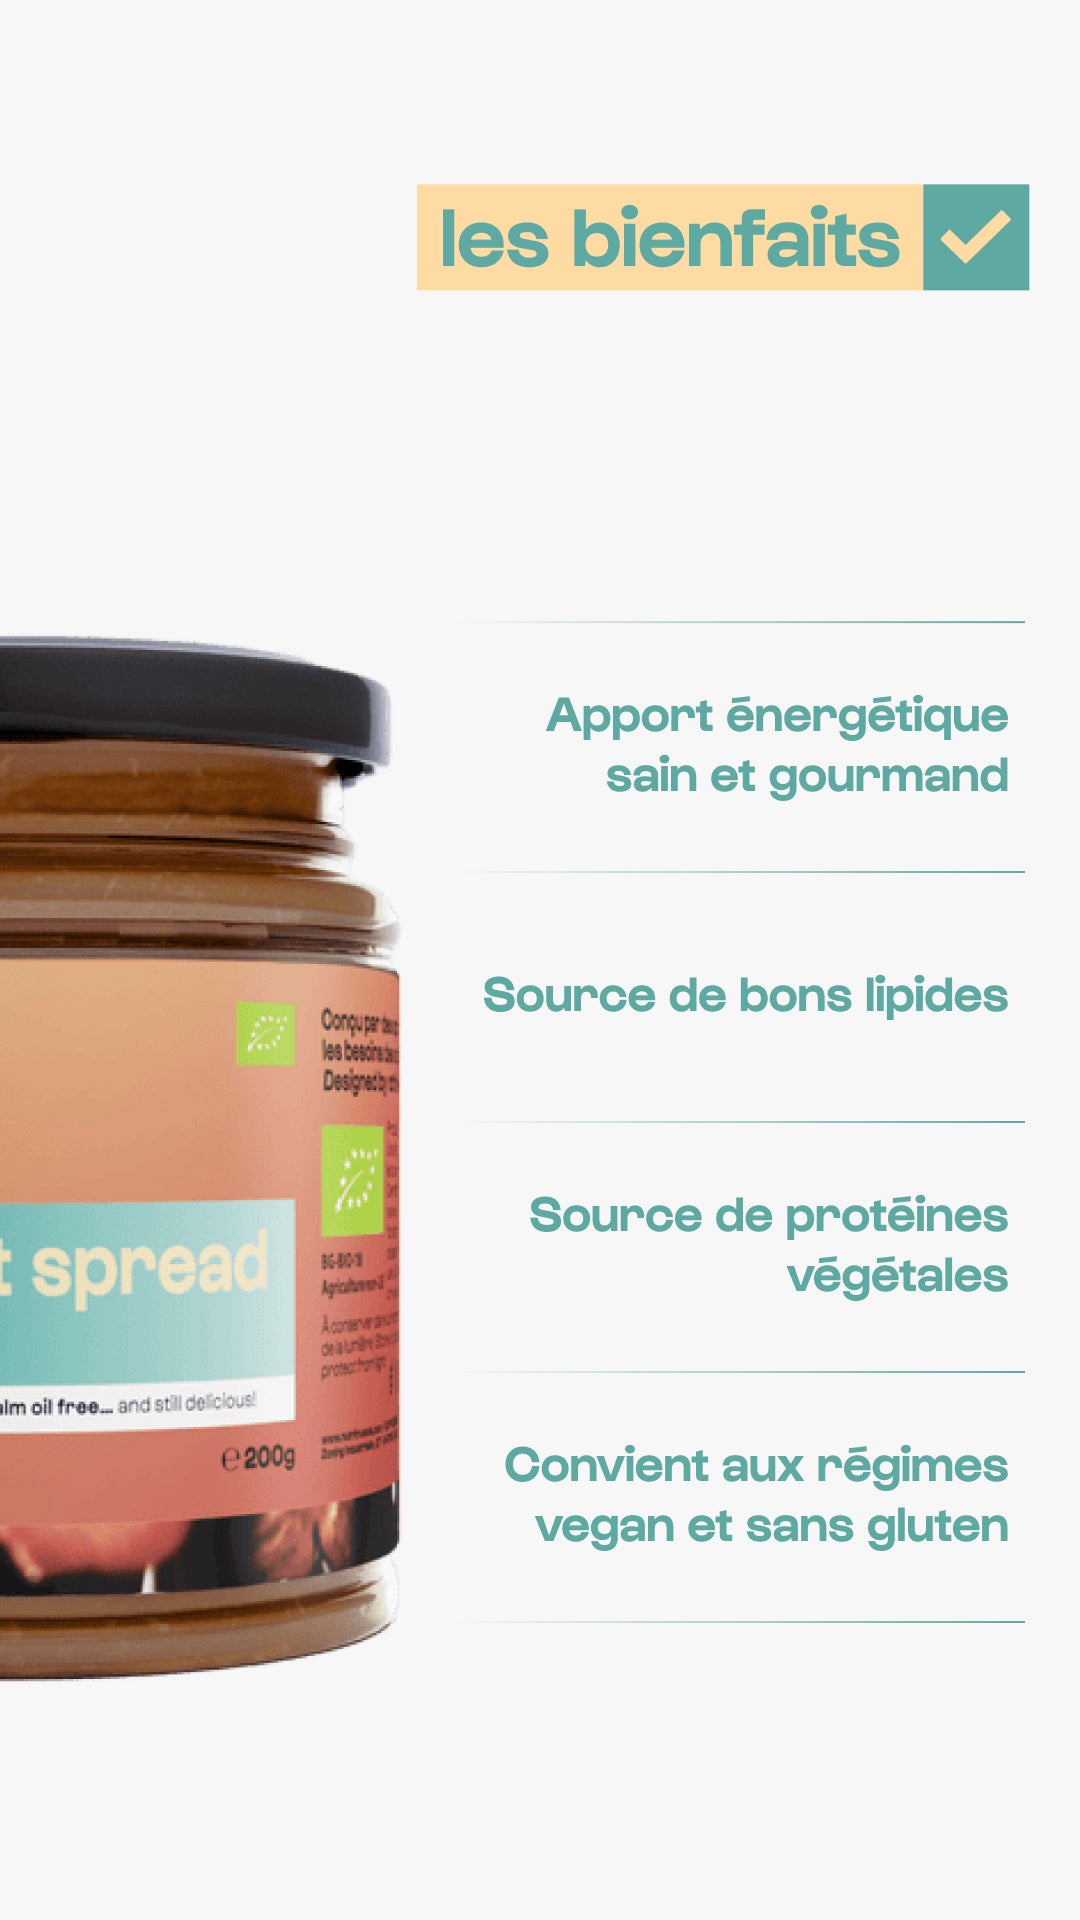 Organic choco-nut spread